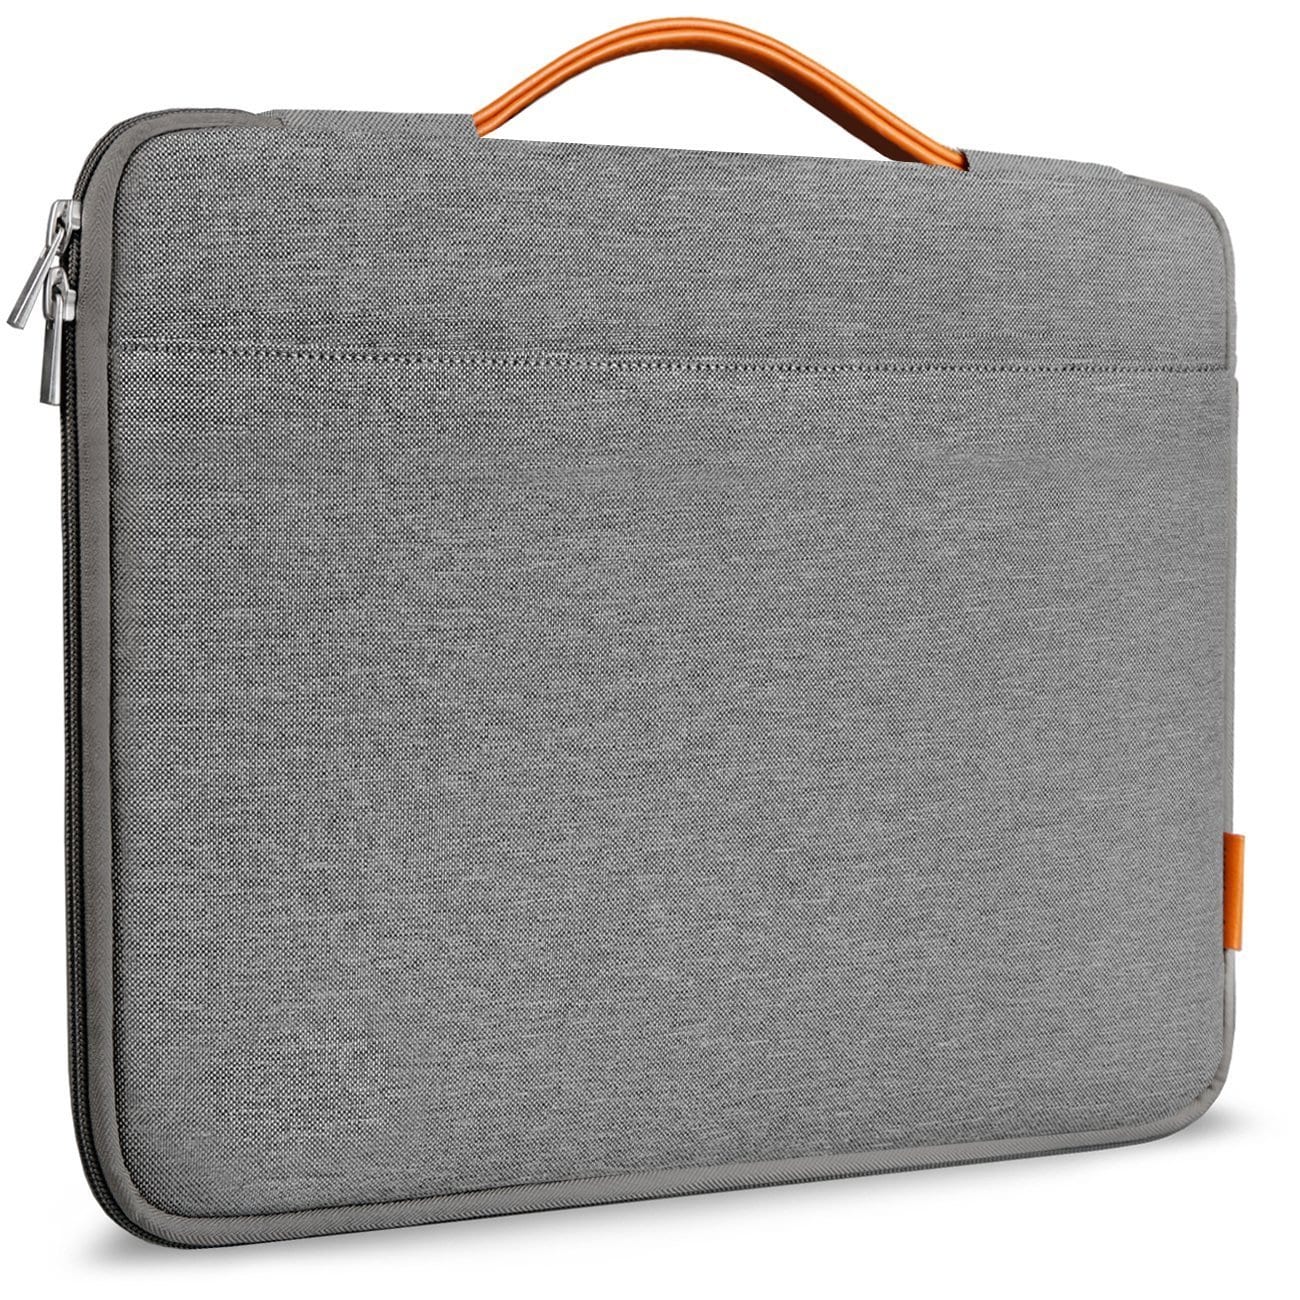 2016 Coworker Gifts: Macbook Sleeve / Case 2017